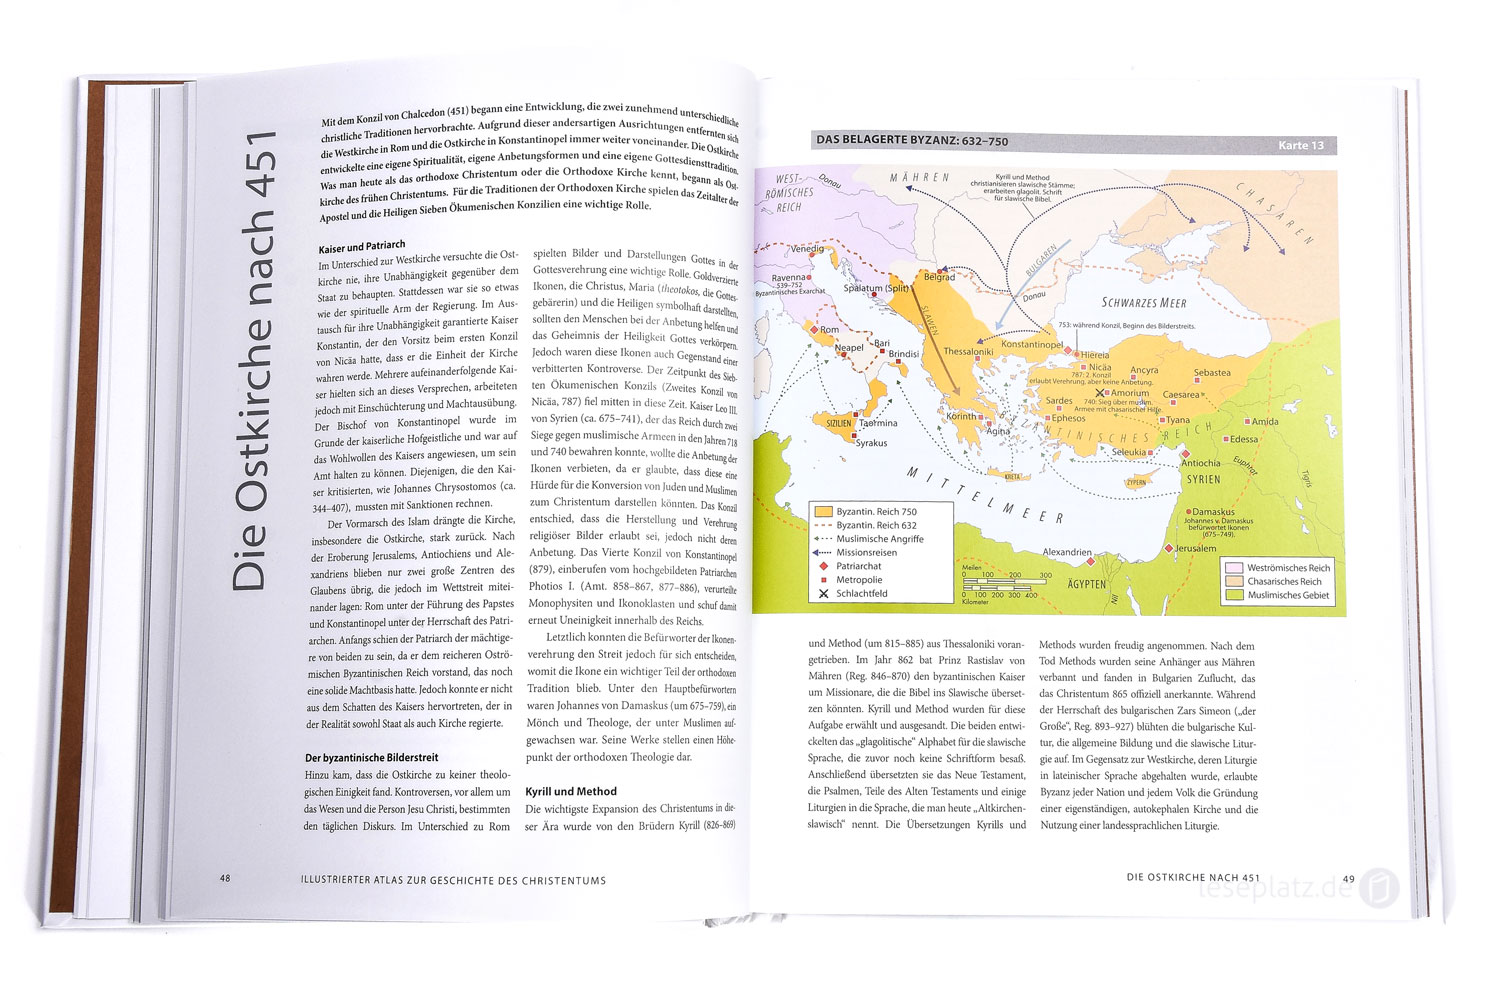 Illustrierter Atlas zur Geschichte des Christentums